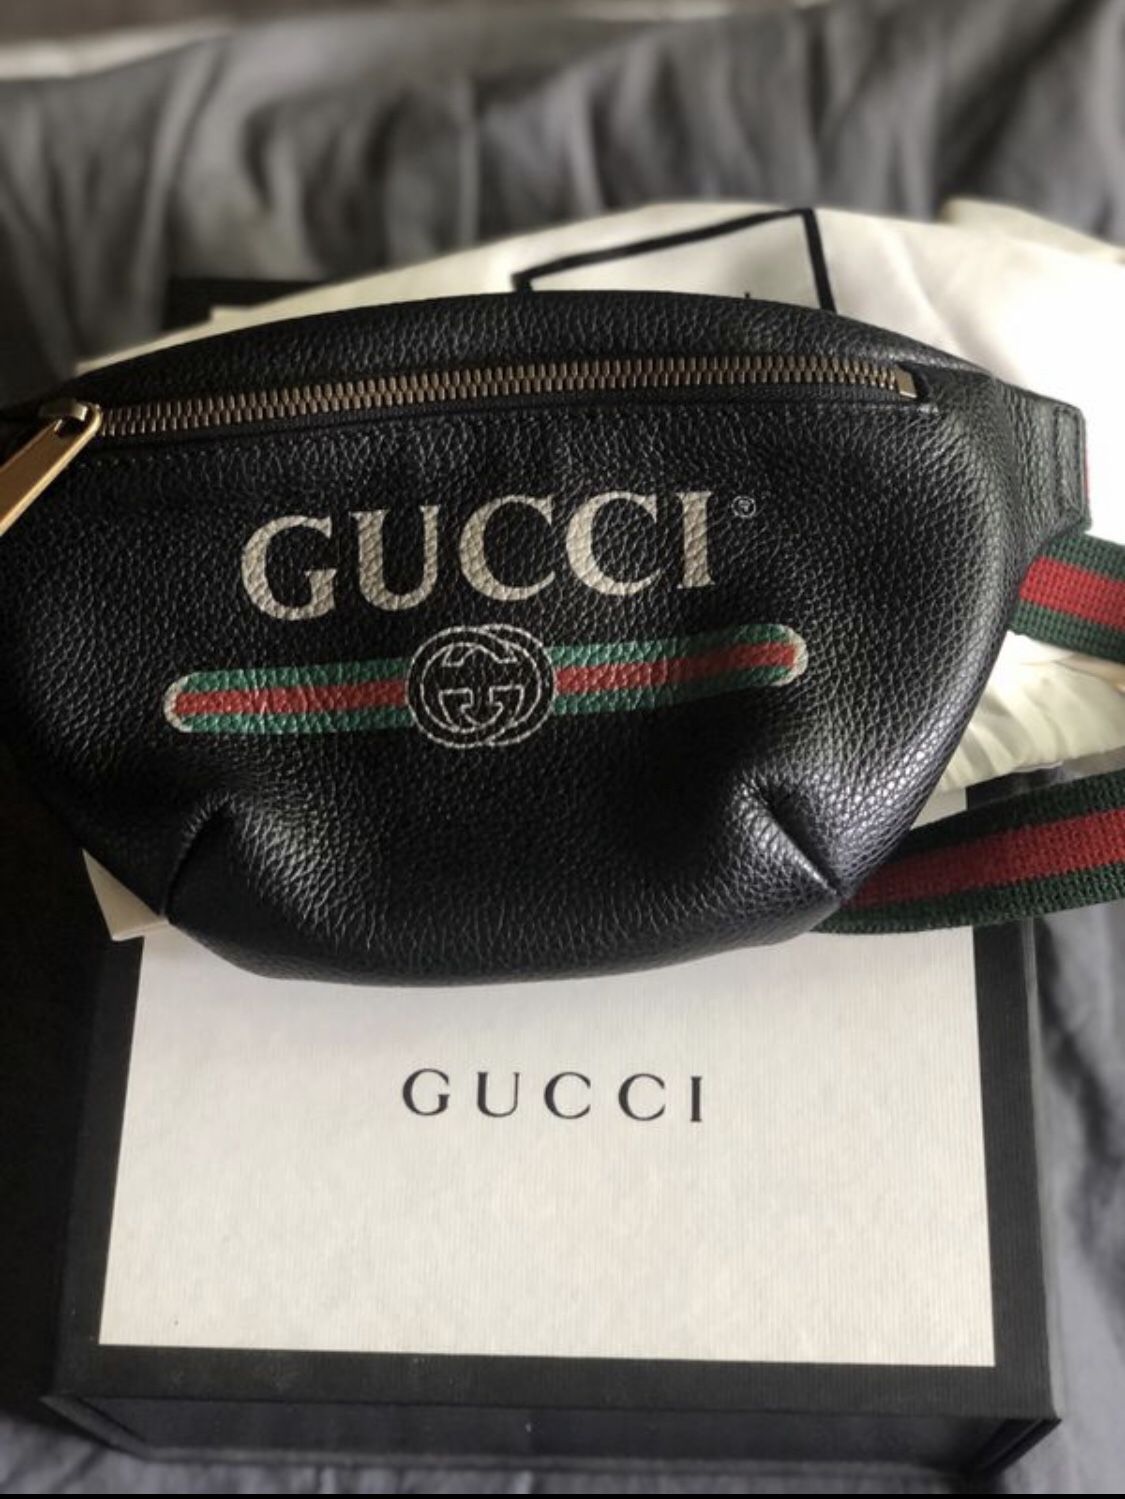 Authentic Gucci belt bag